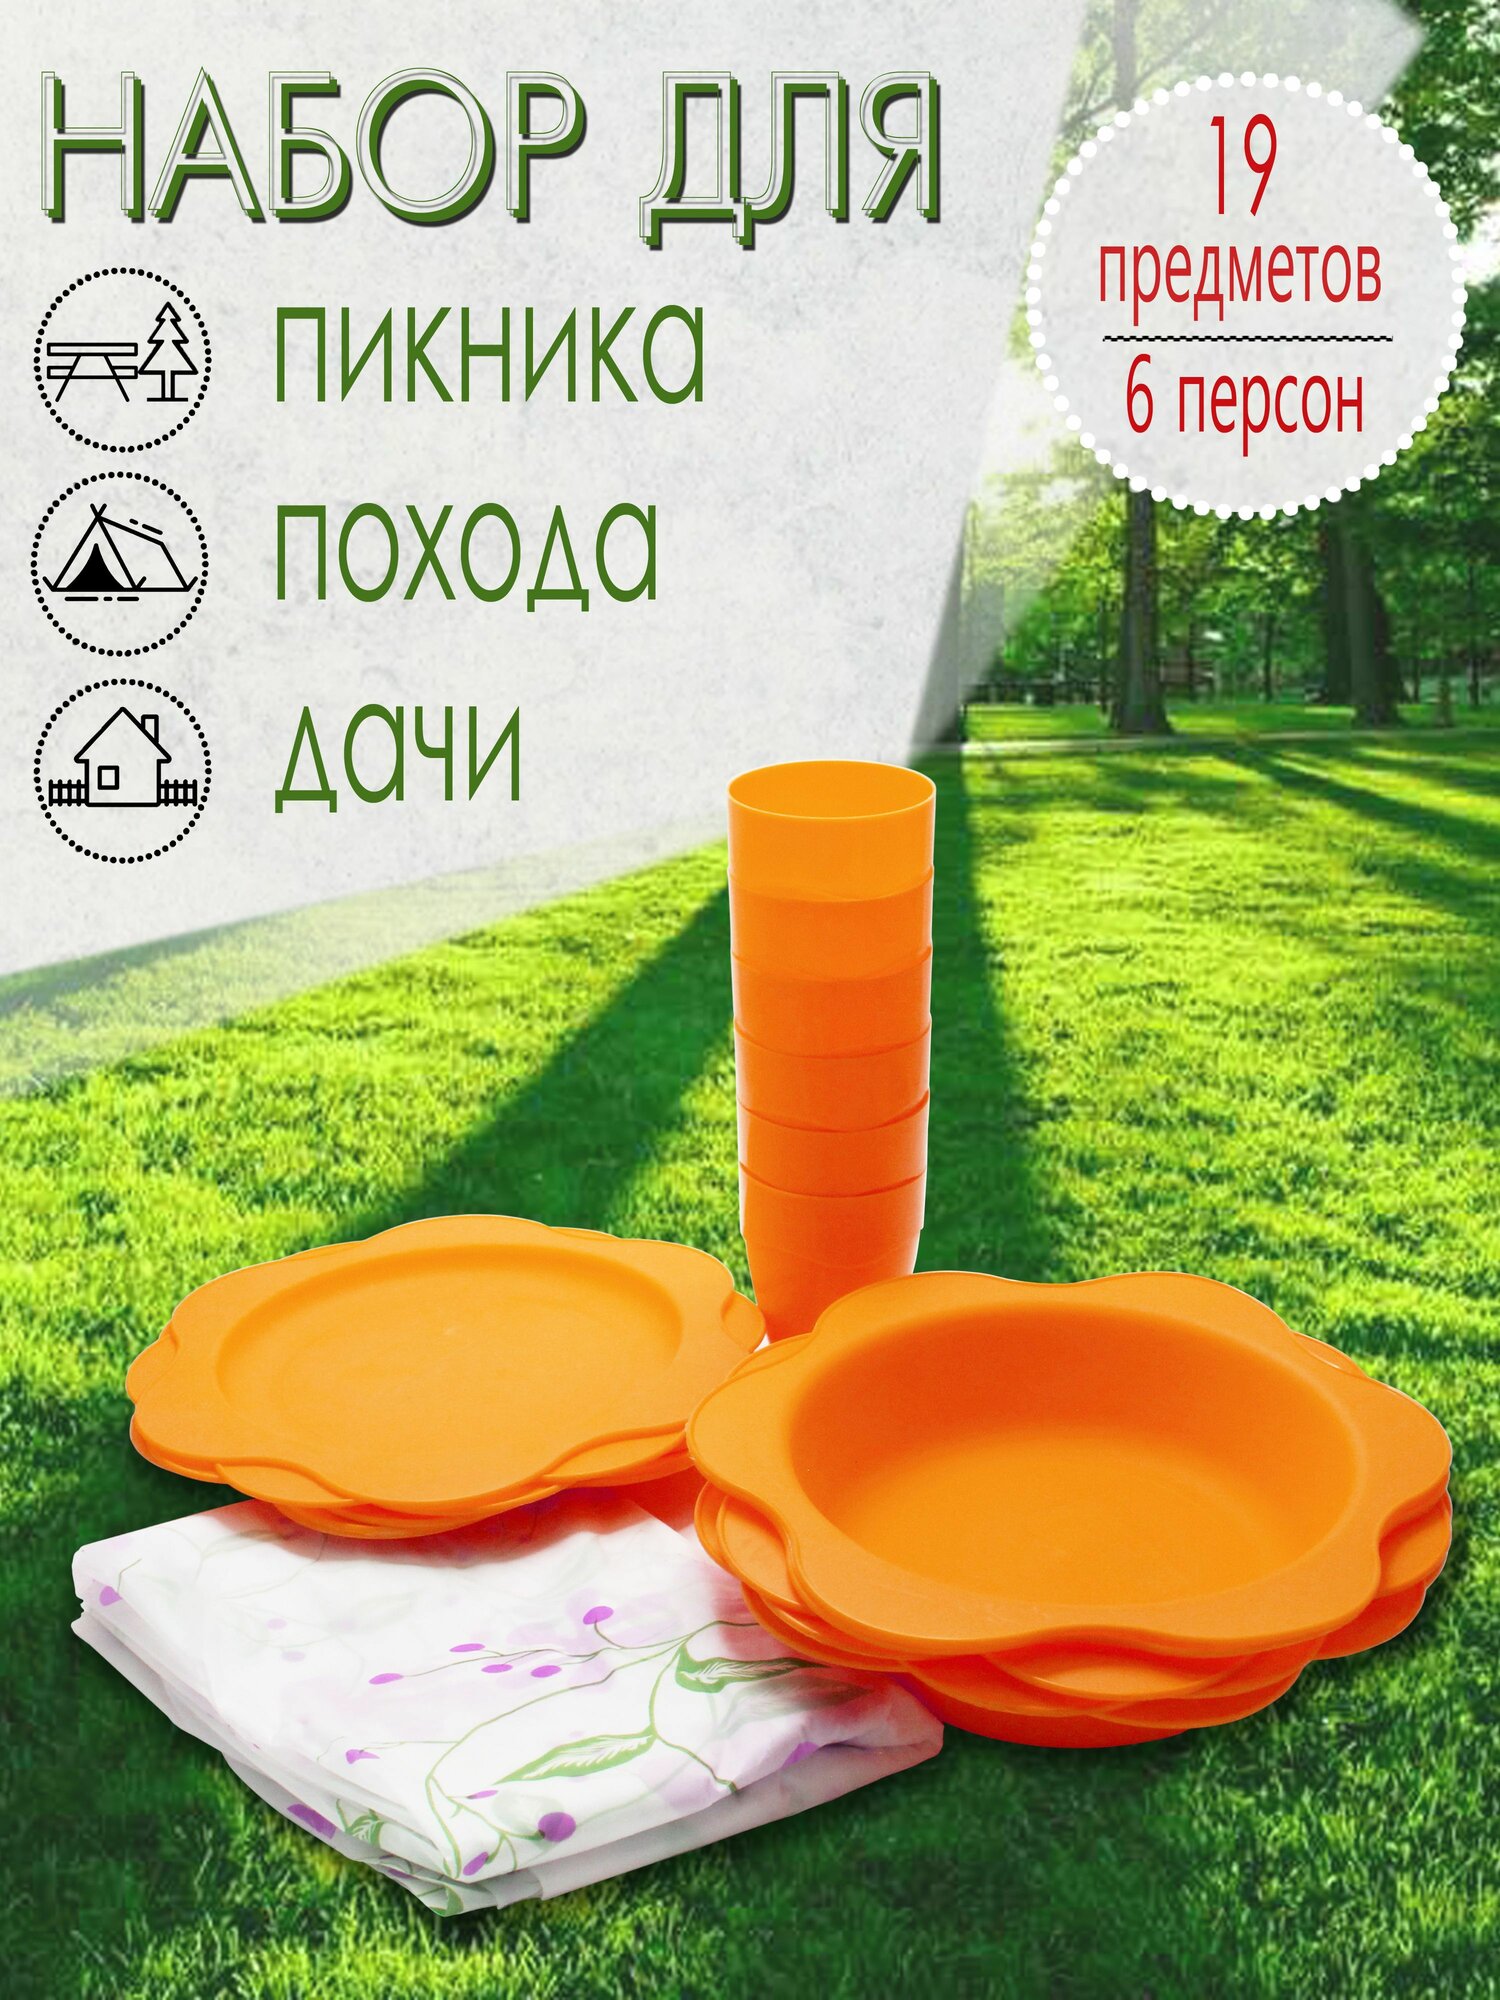 Набор для пикника 6 персон 19 предметов (оранжевый) НПО6Д